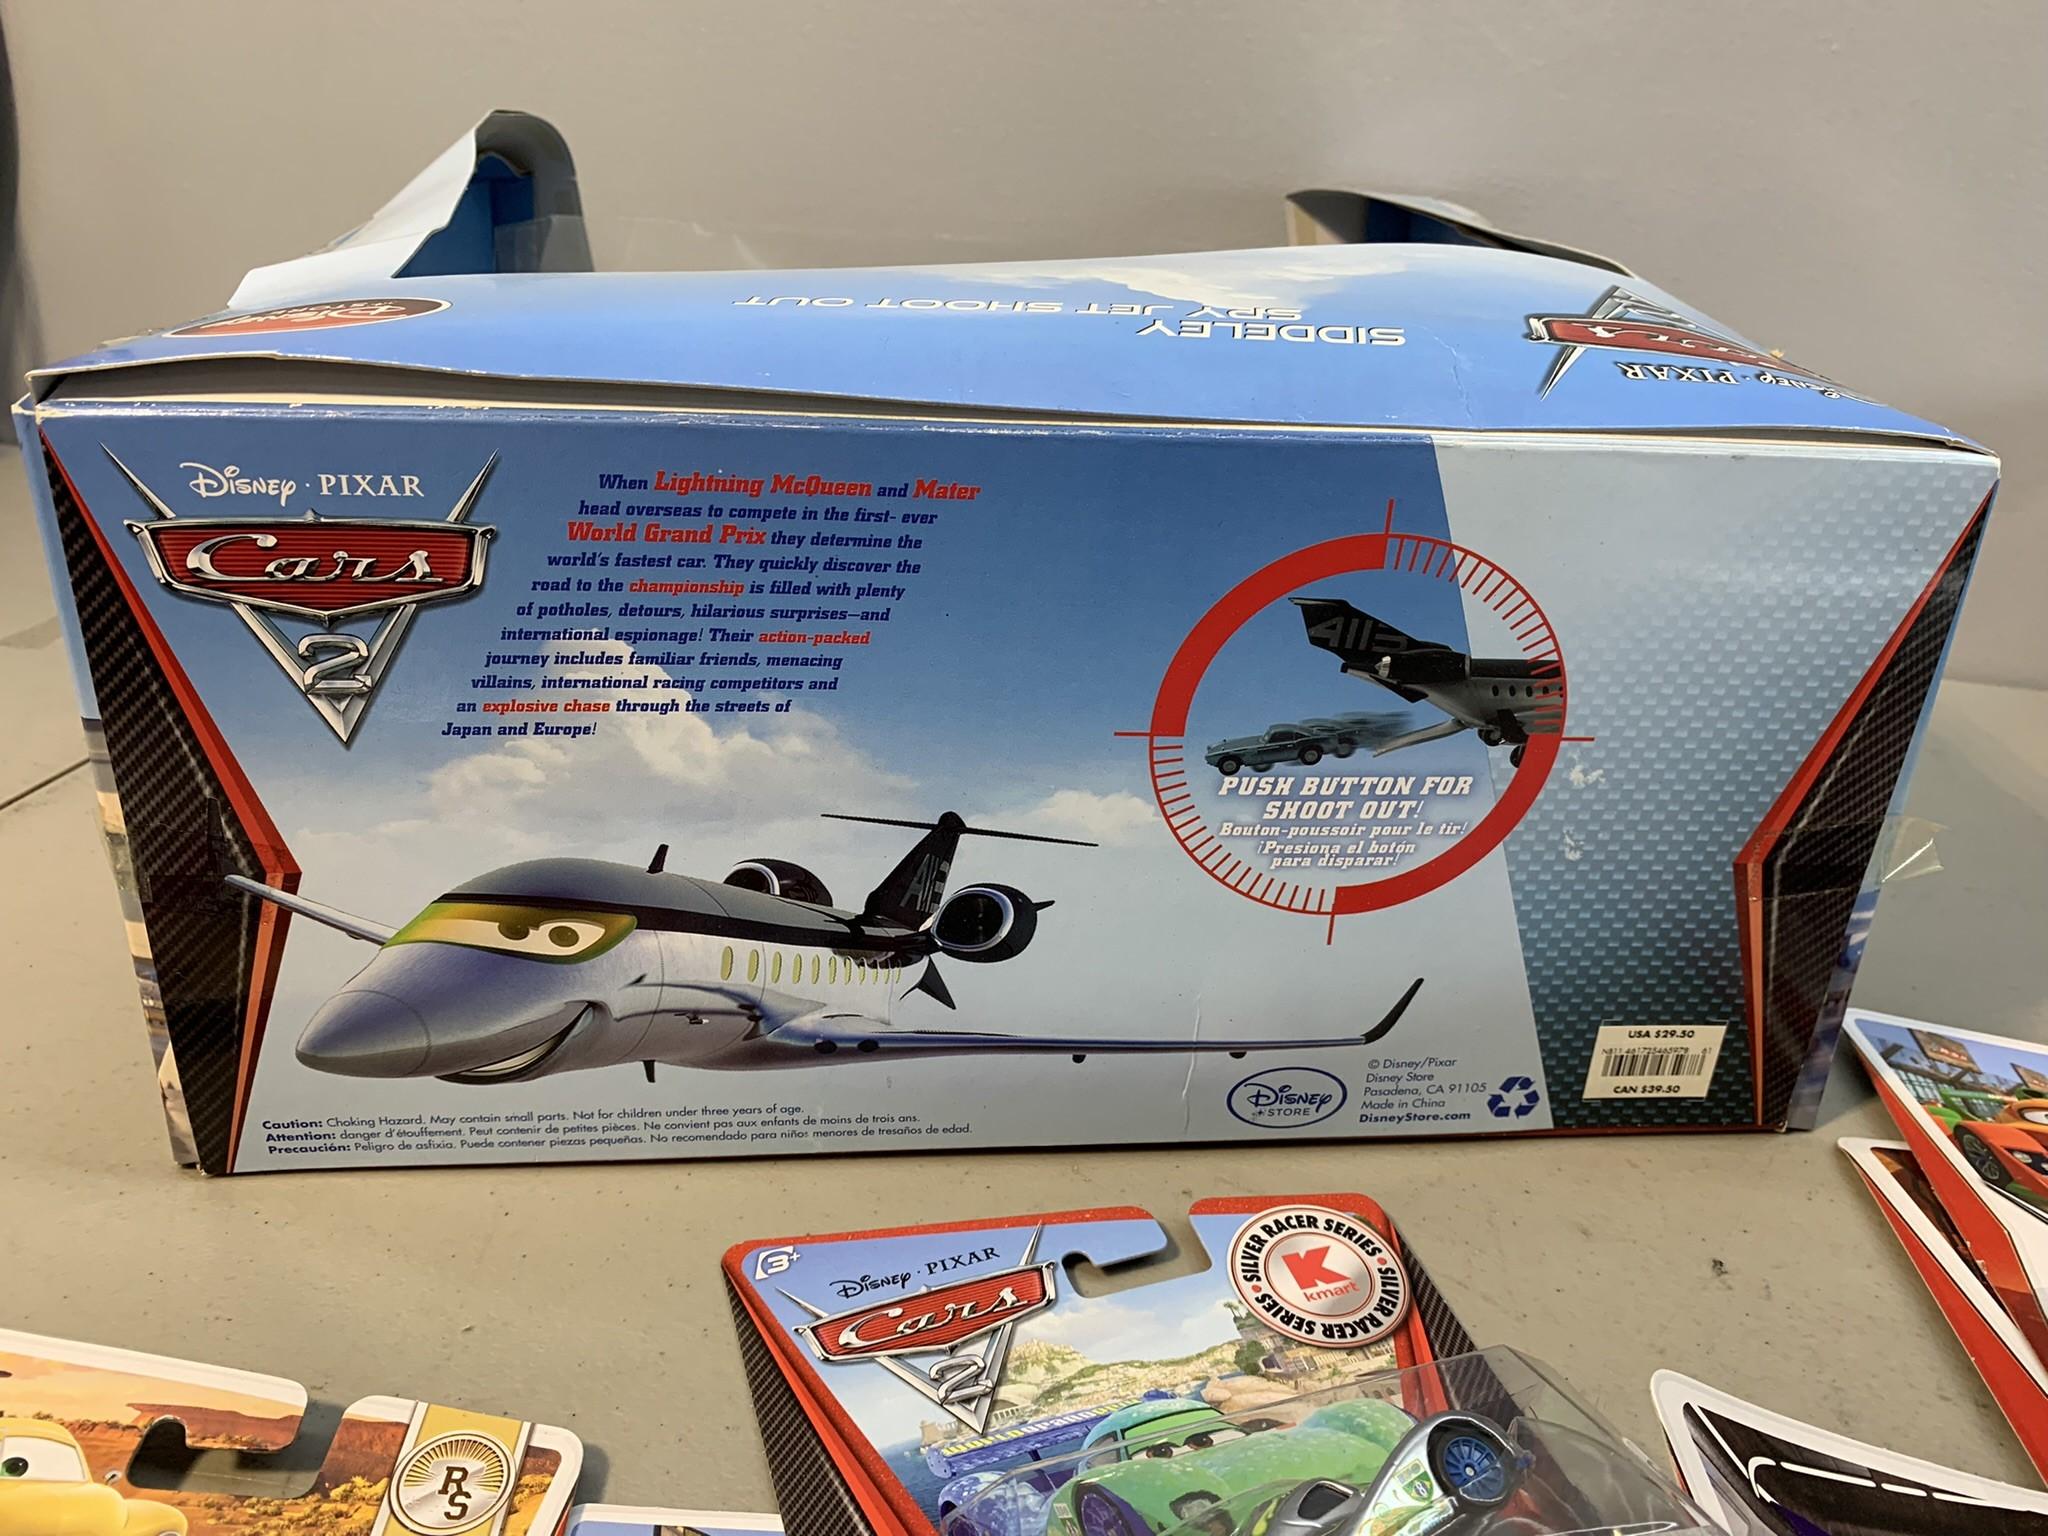 Group of Disney Pixar Cars including Siddeley Spy Jet Shoot Out Plane